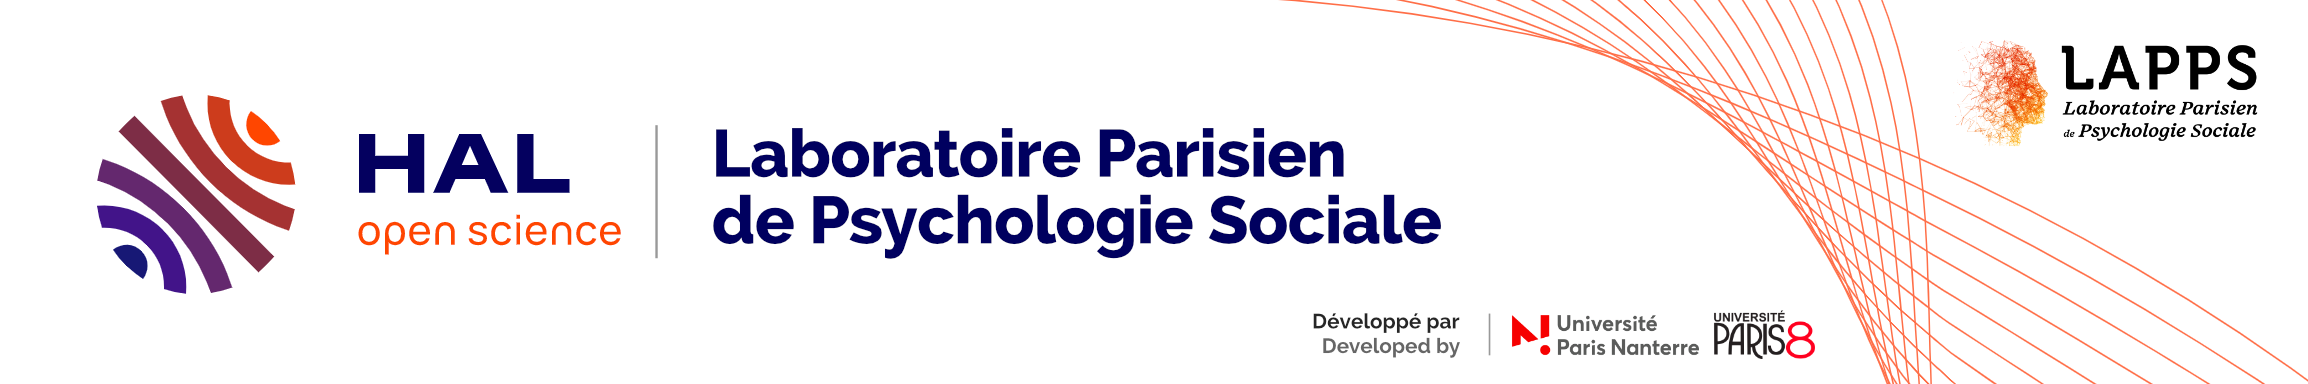 Archive Ouverte HAL du Laboratoire Parisien de Psychologie Sociale